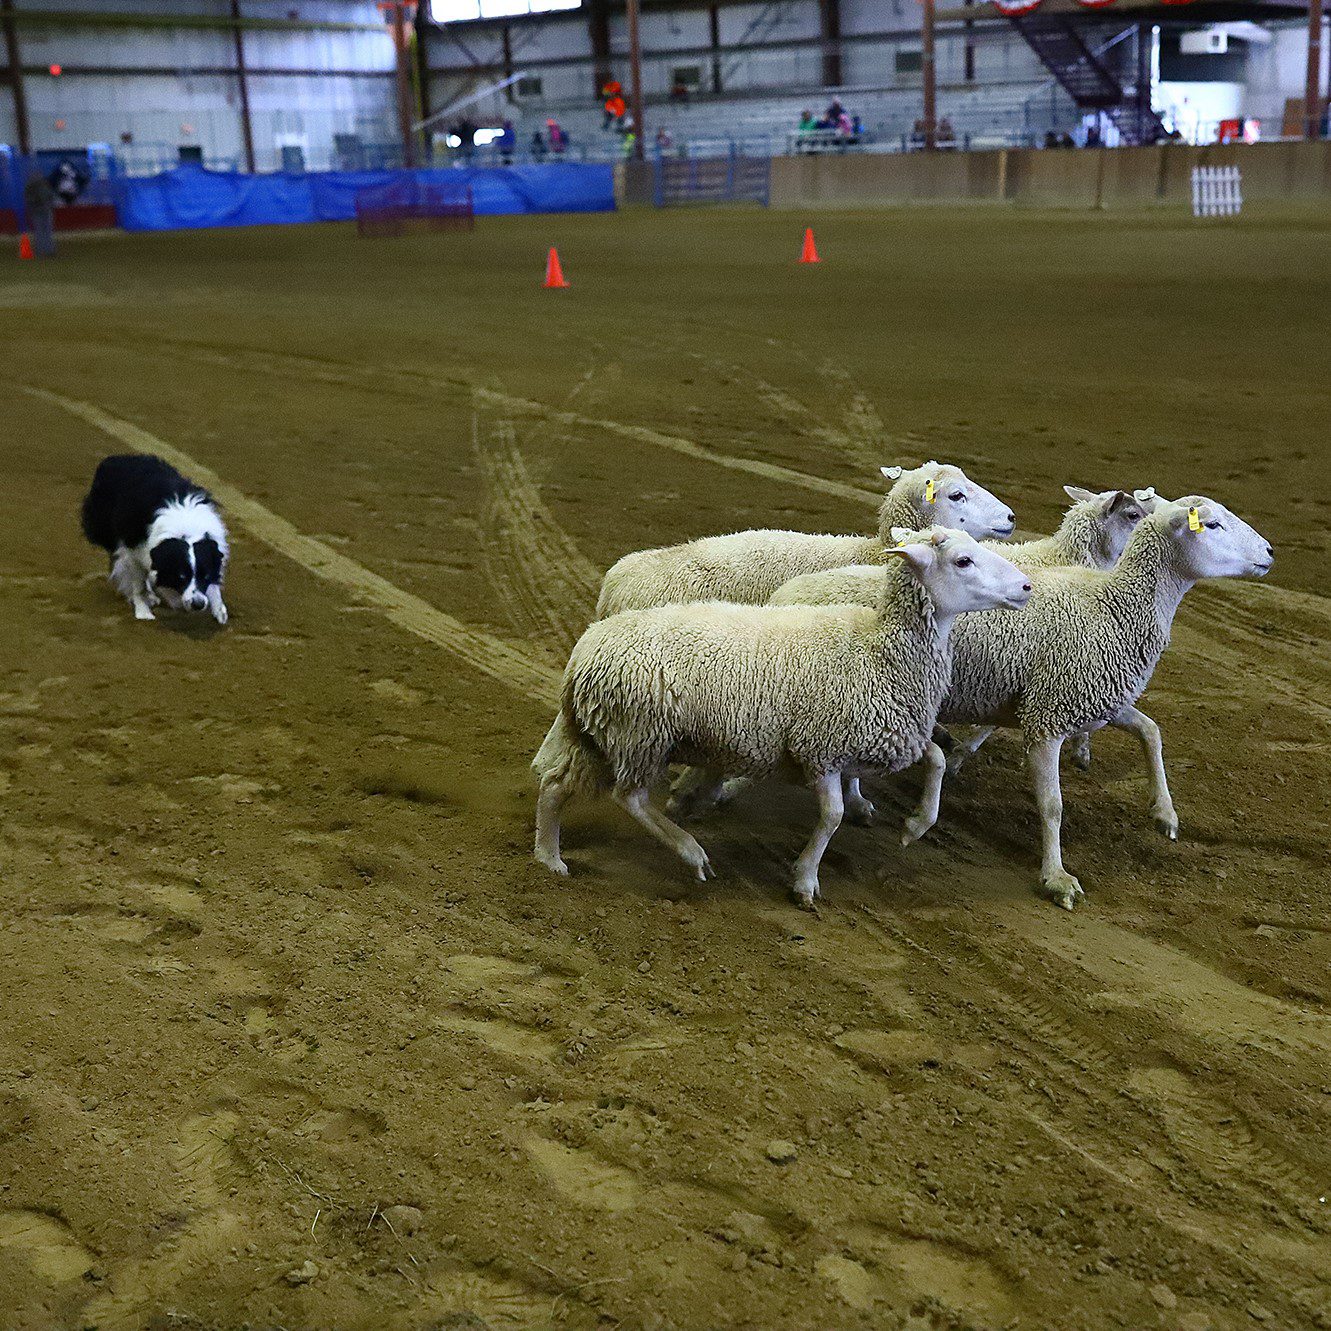 sheep dog trials, arena